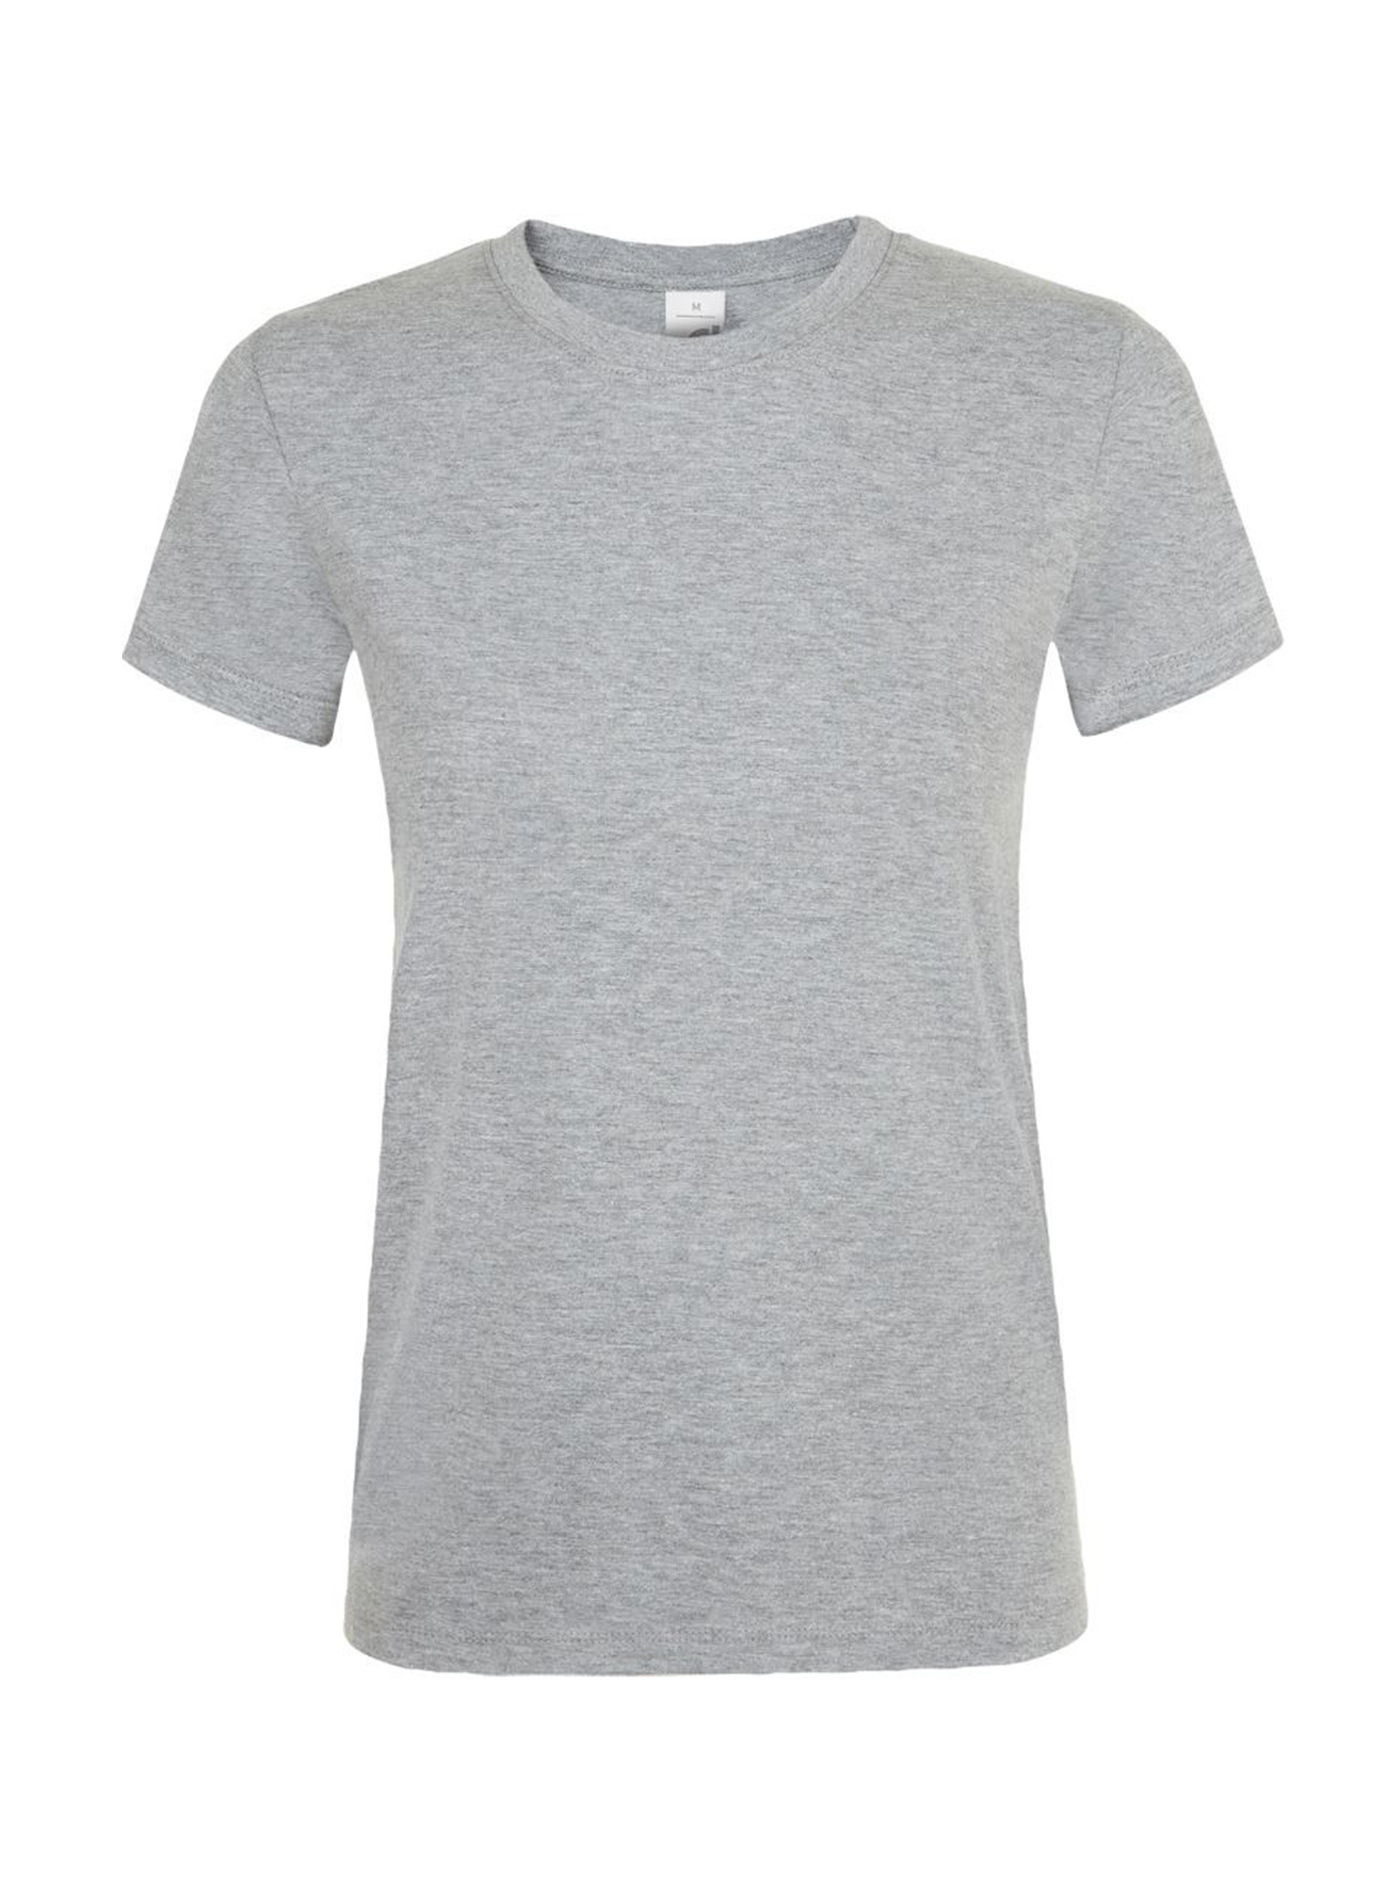 Dámské tričko SOL'S Regent - Světle šedý melír XL